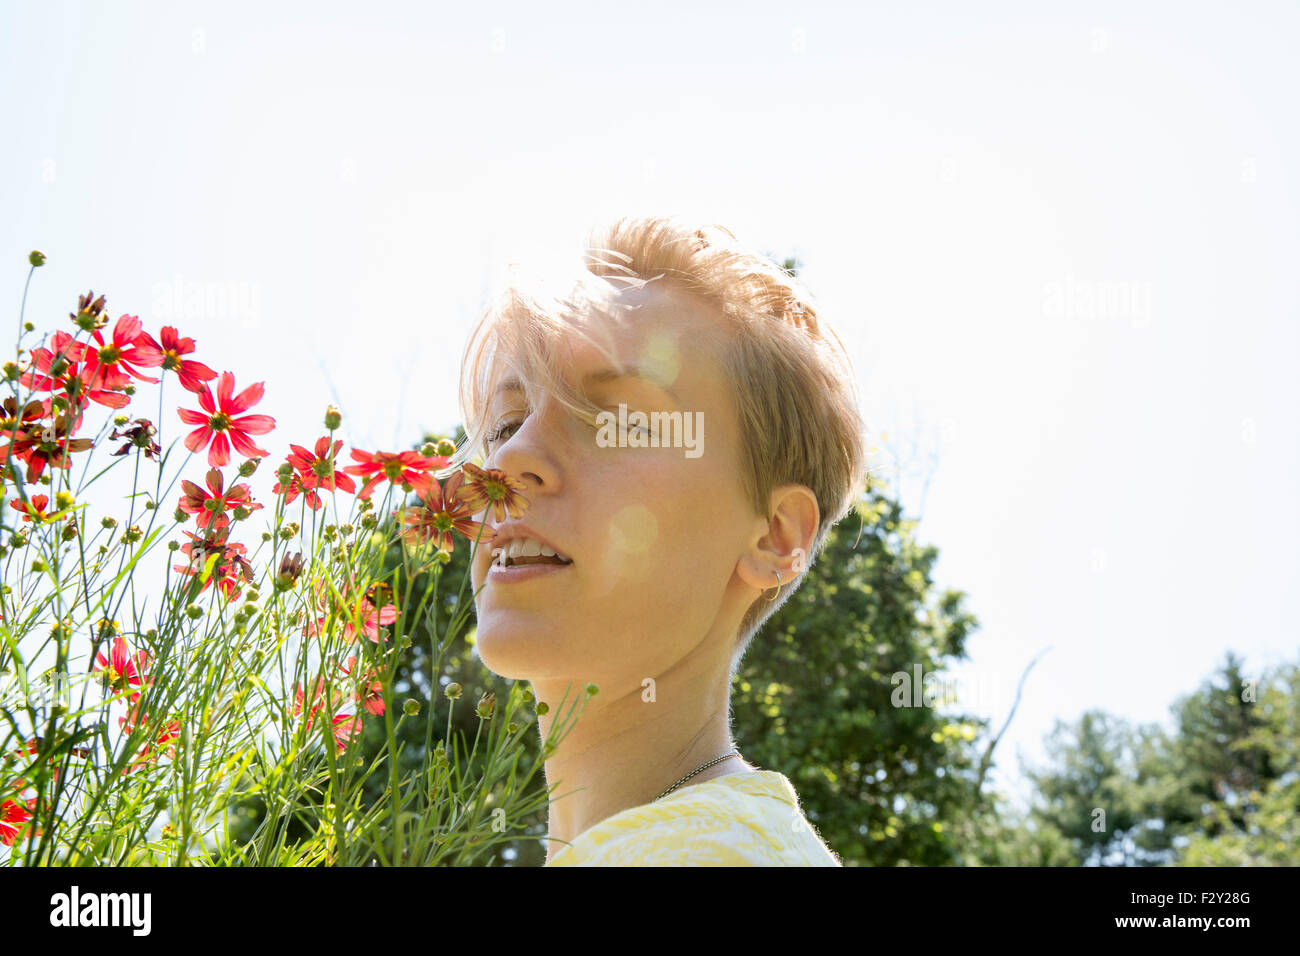 Eine junge Frau in eine Blume Grenze, Angesicht zu Angesicht mit Palette Rudbekia Blumen. Stockfoto